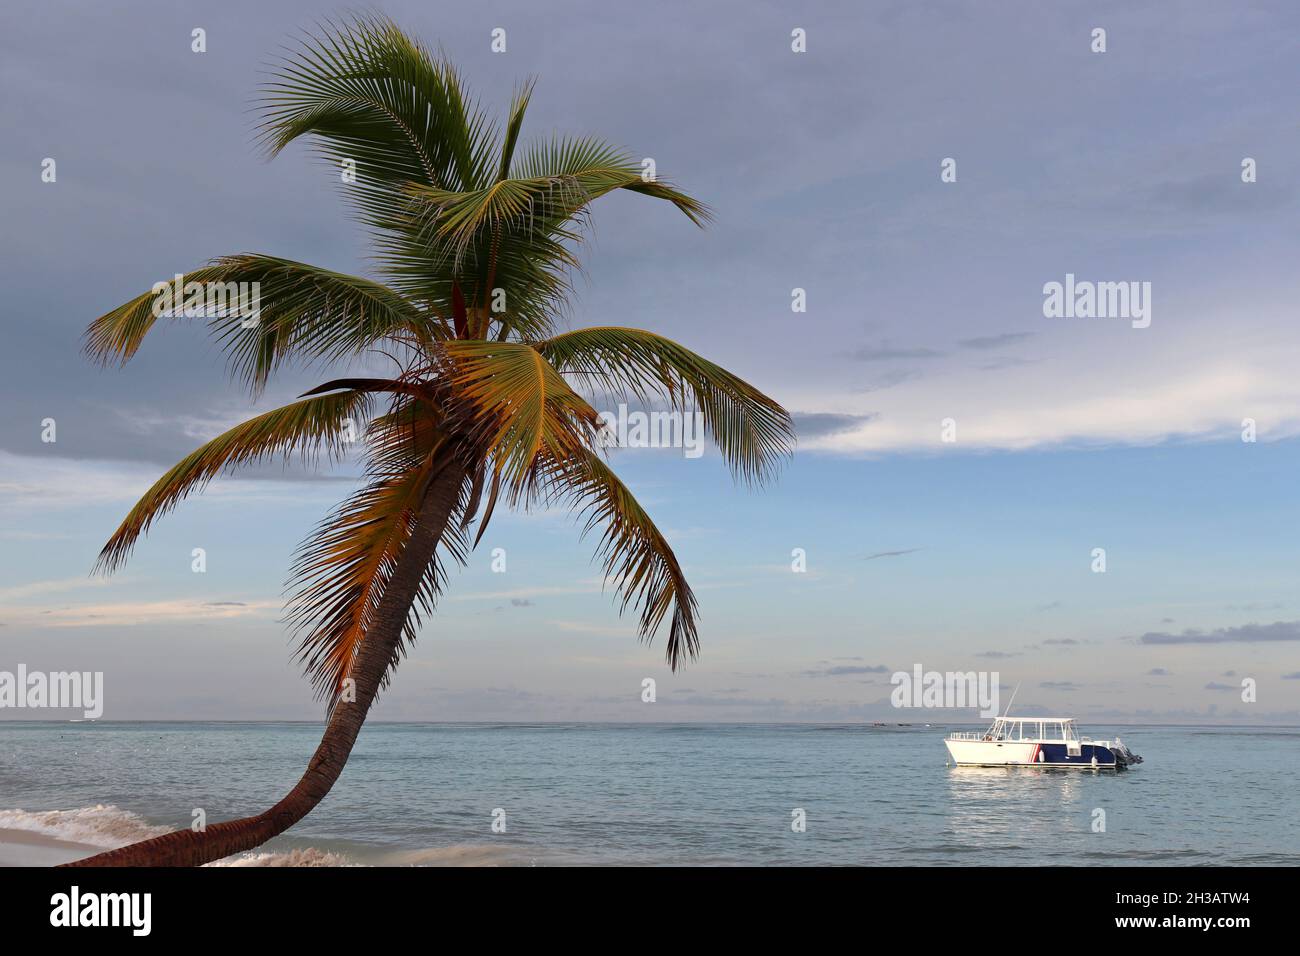 Palmiers à noix de coco sur fond de ciel et de mer le matin.Plage tropicale, vacances sur la côte paradisiaque Banque D'Images